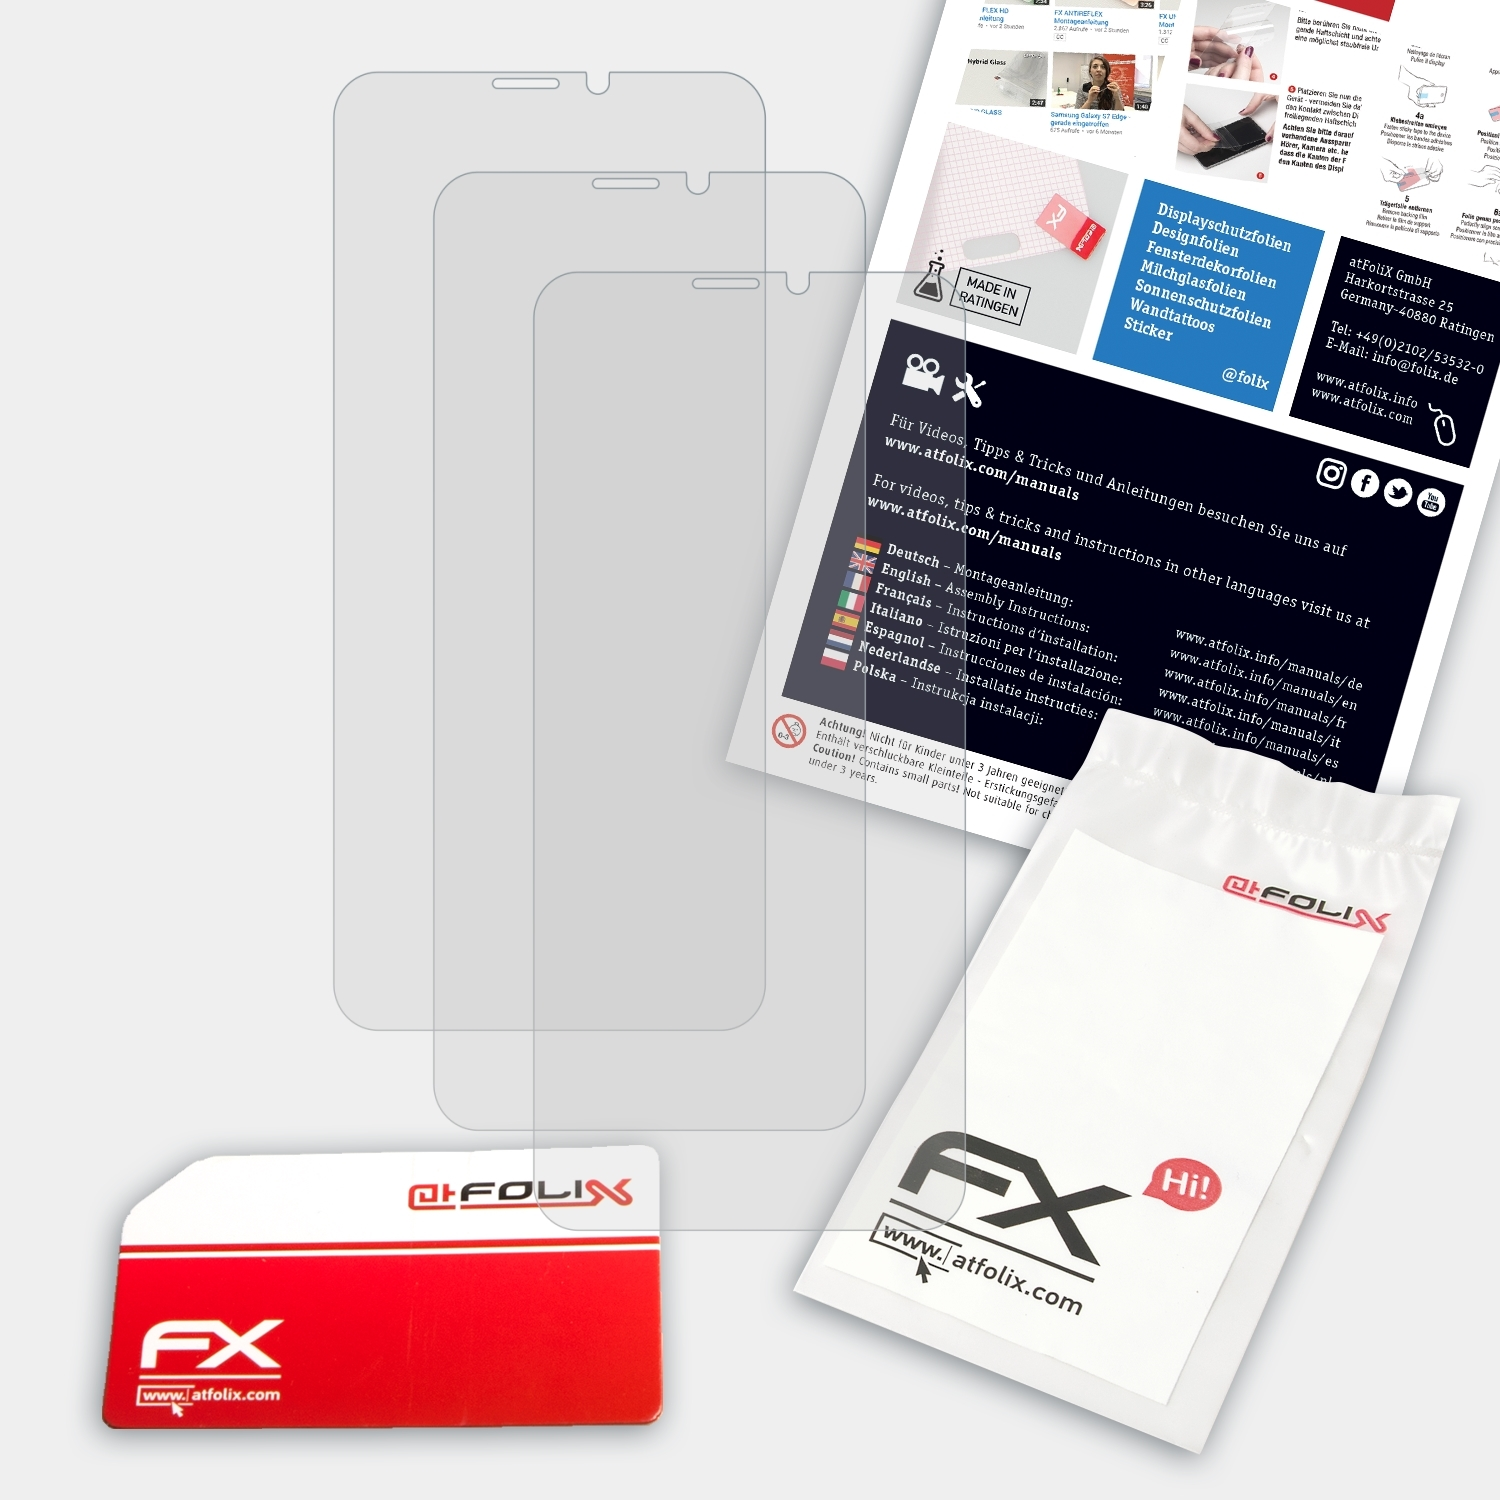 ATFOLIX 3x FX-Antireflex Displayschutz(für Keecoo P11)